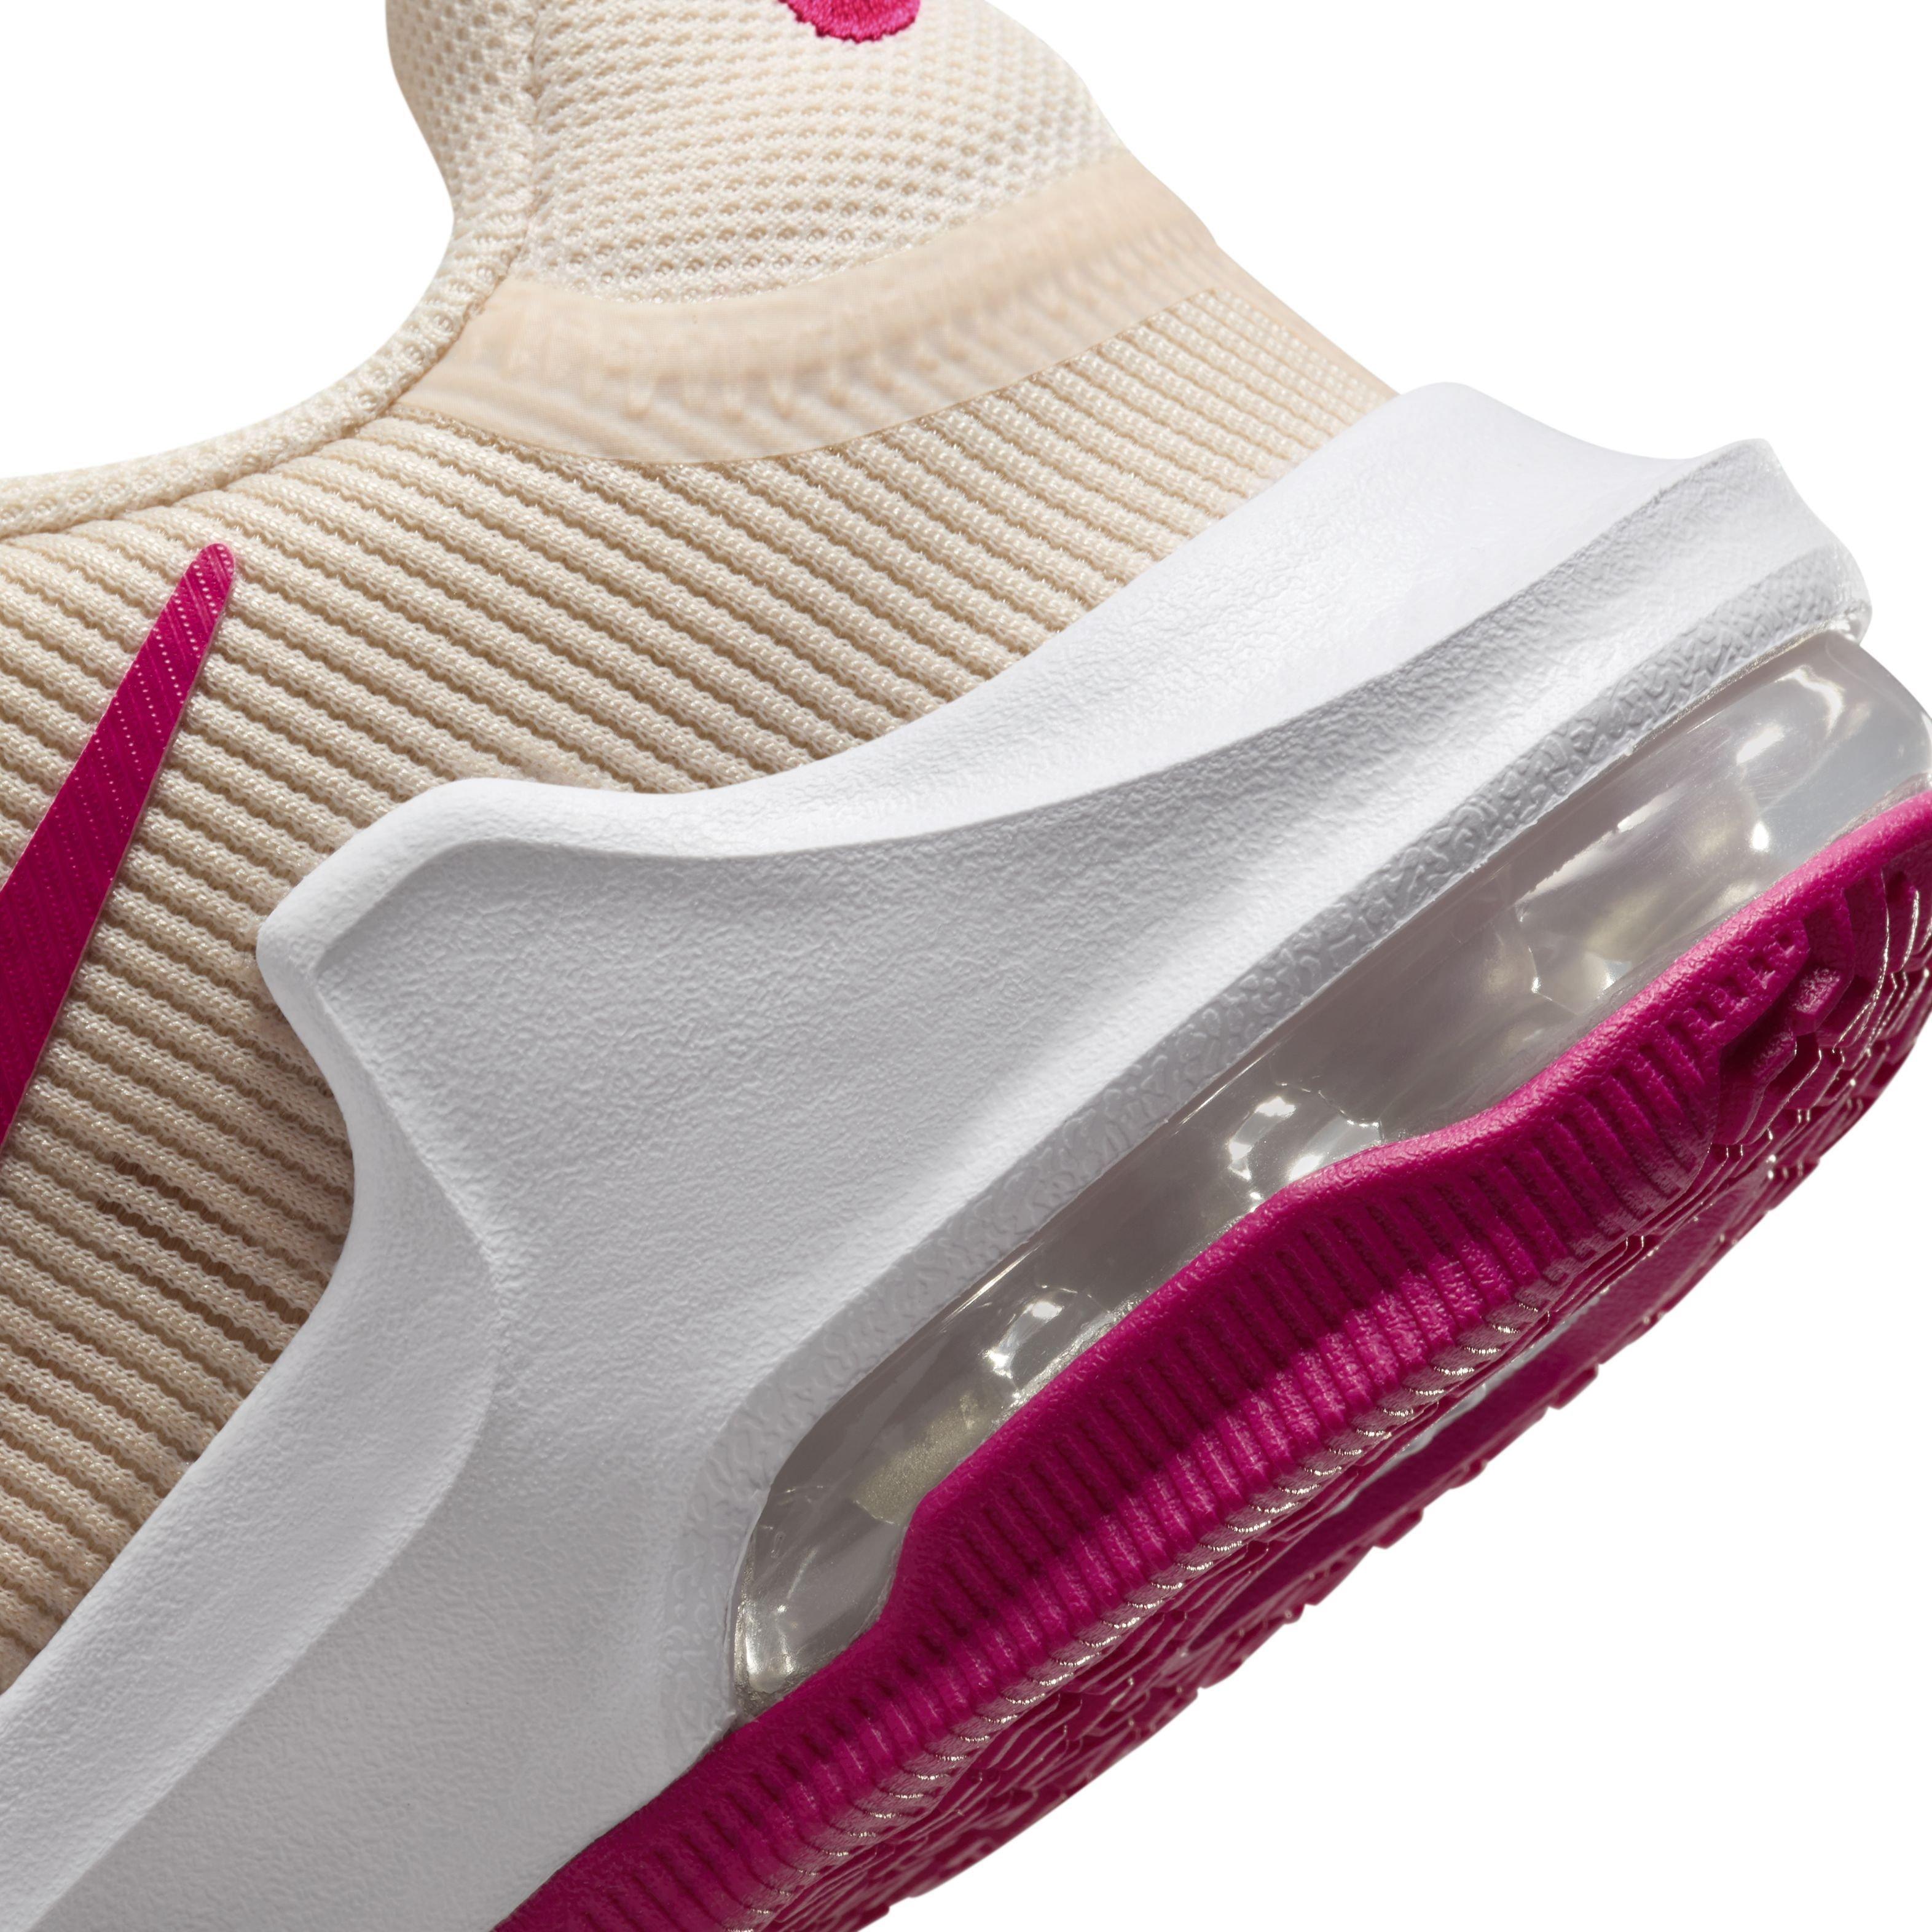 Nike Air Max 270 Hyper Pink Women's Shoe - Hibbett